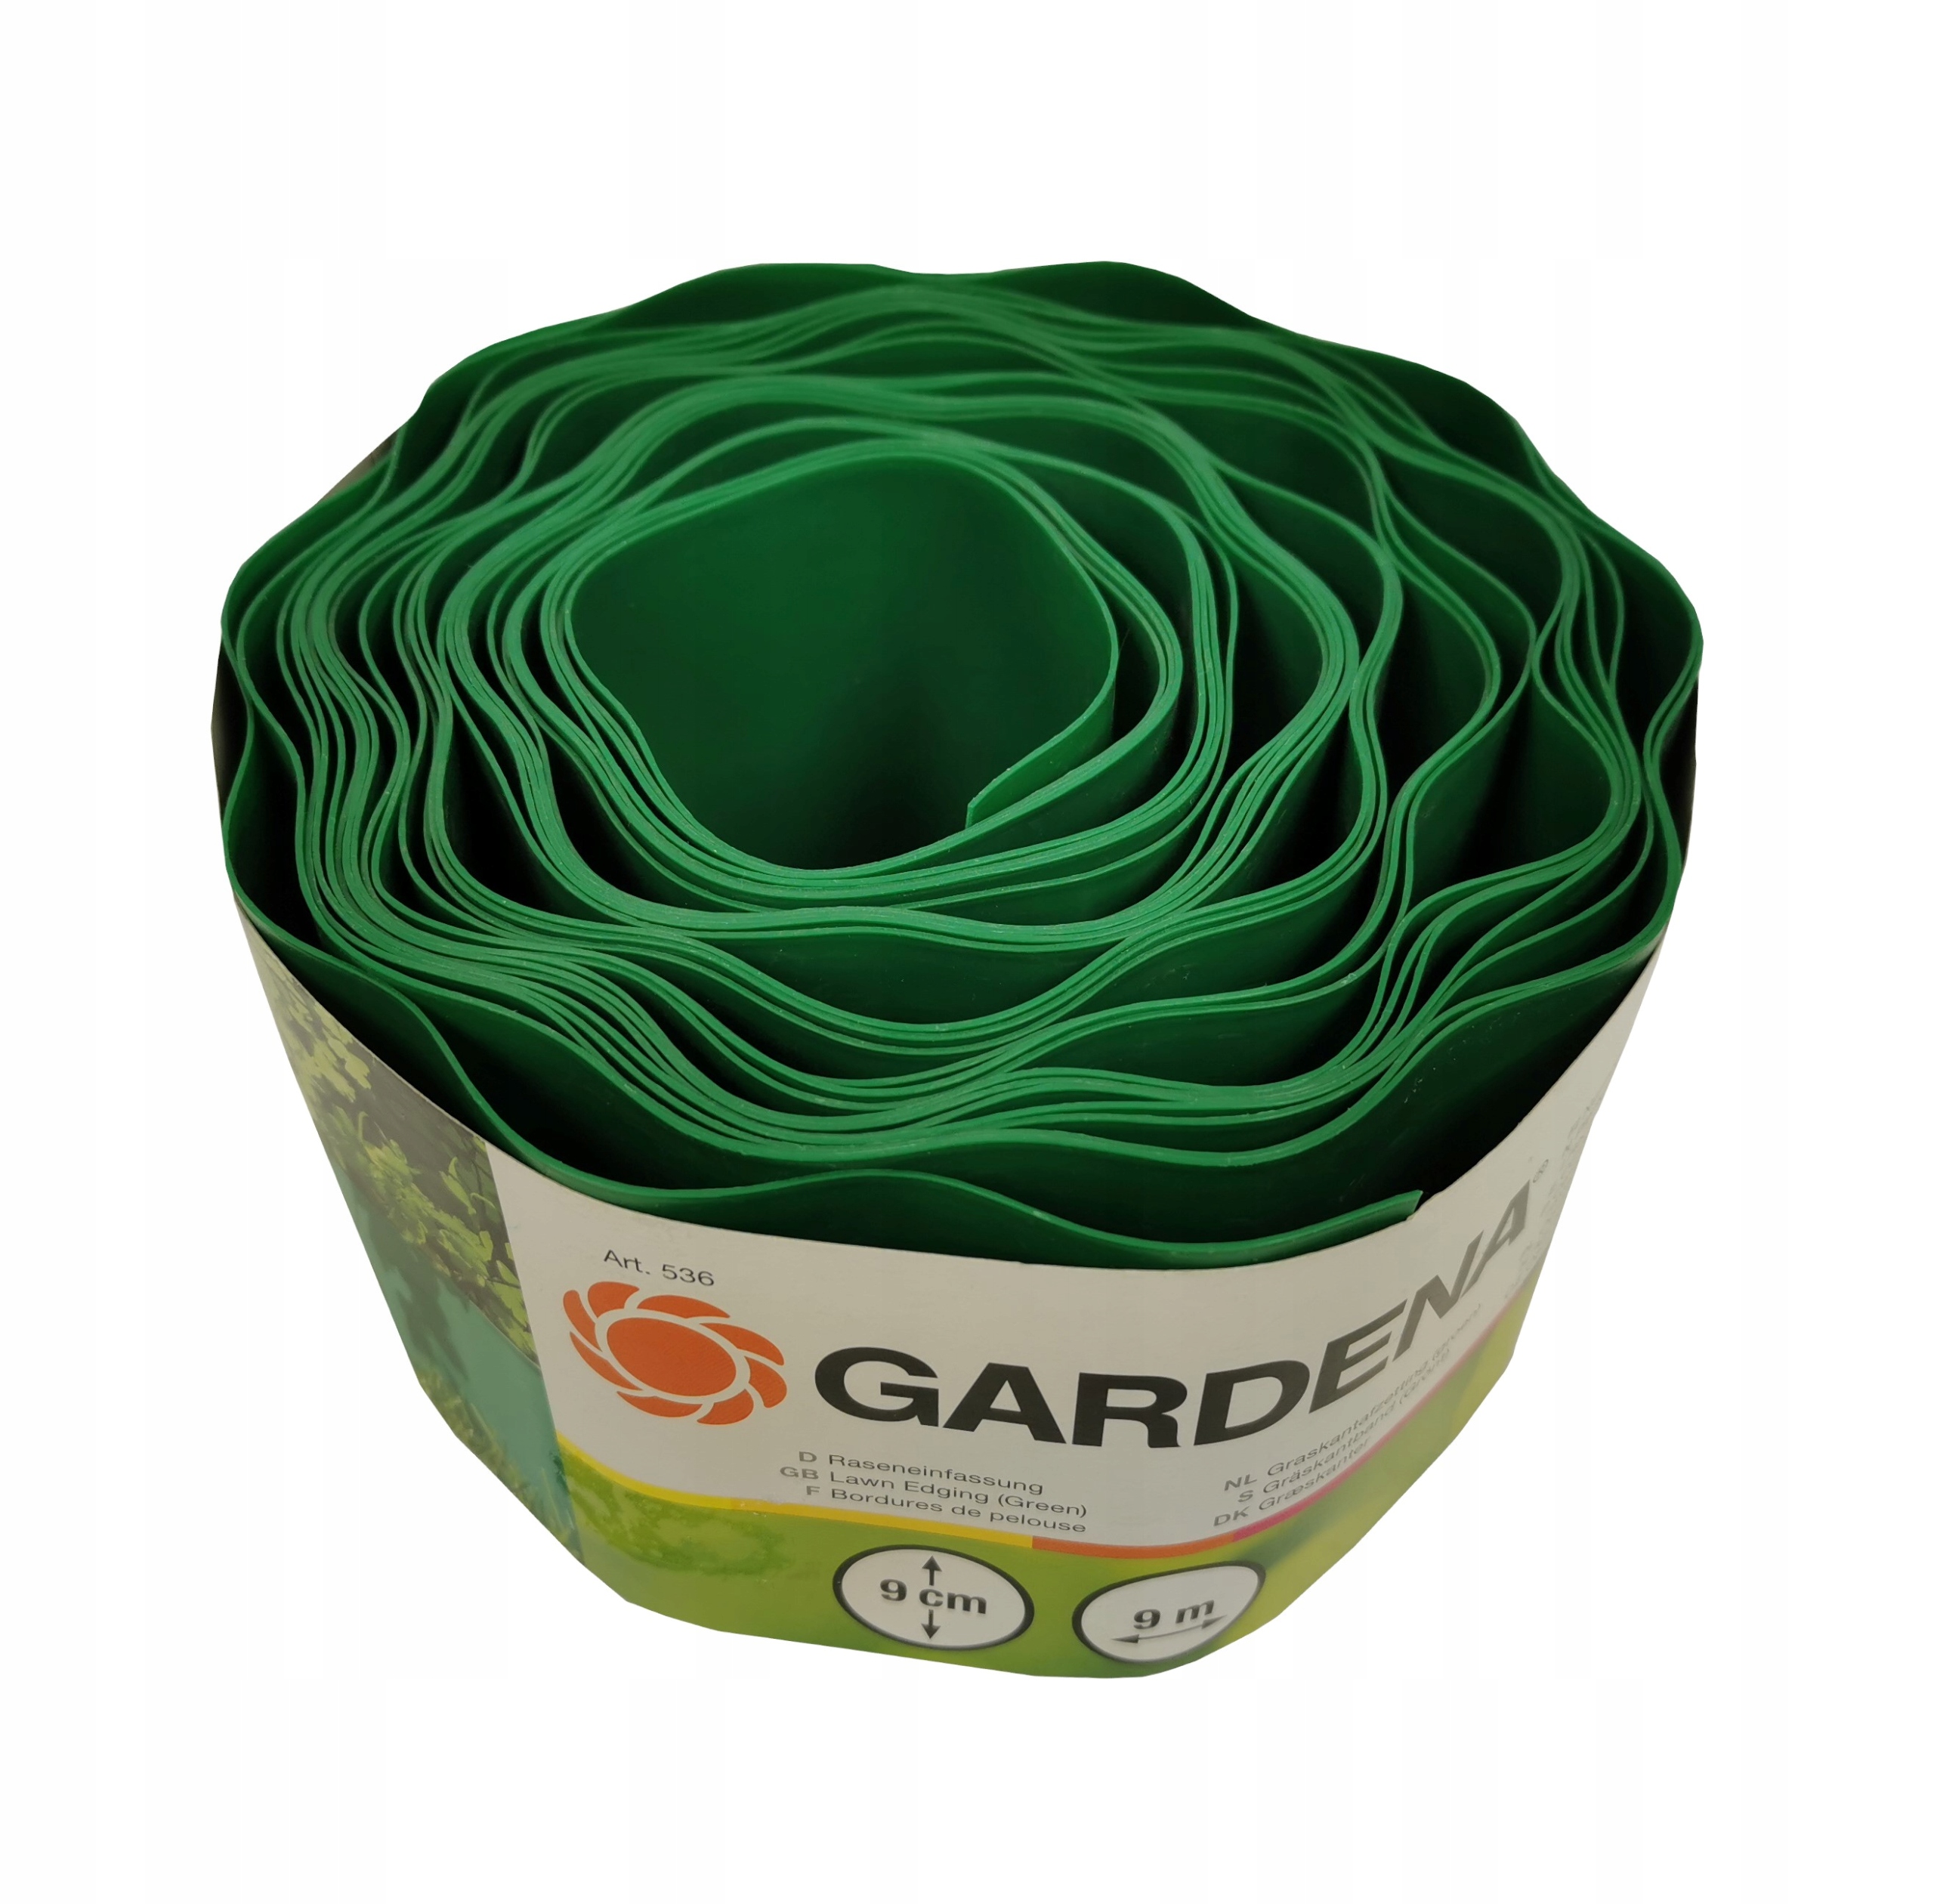 Gardena 536 бордюр для газона 9см/9м забор